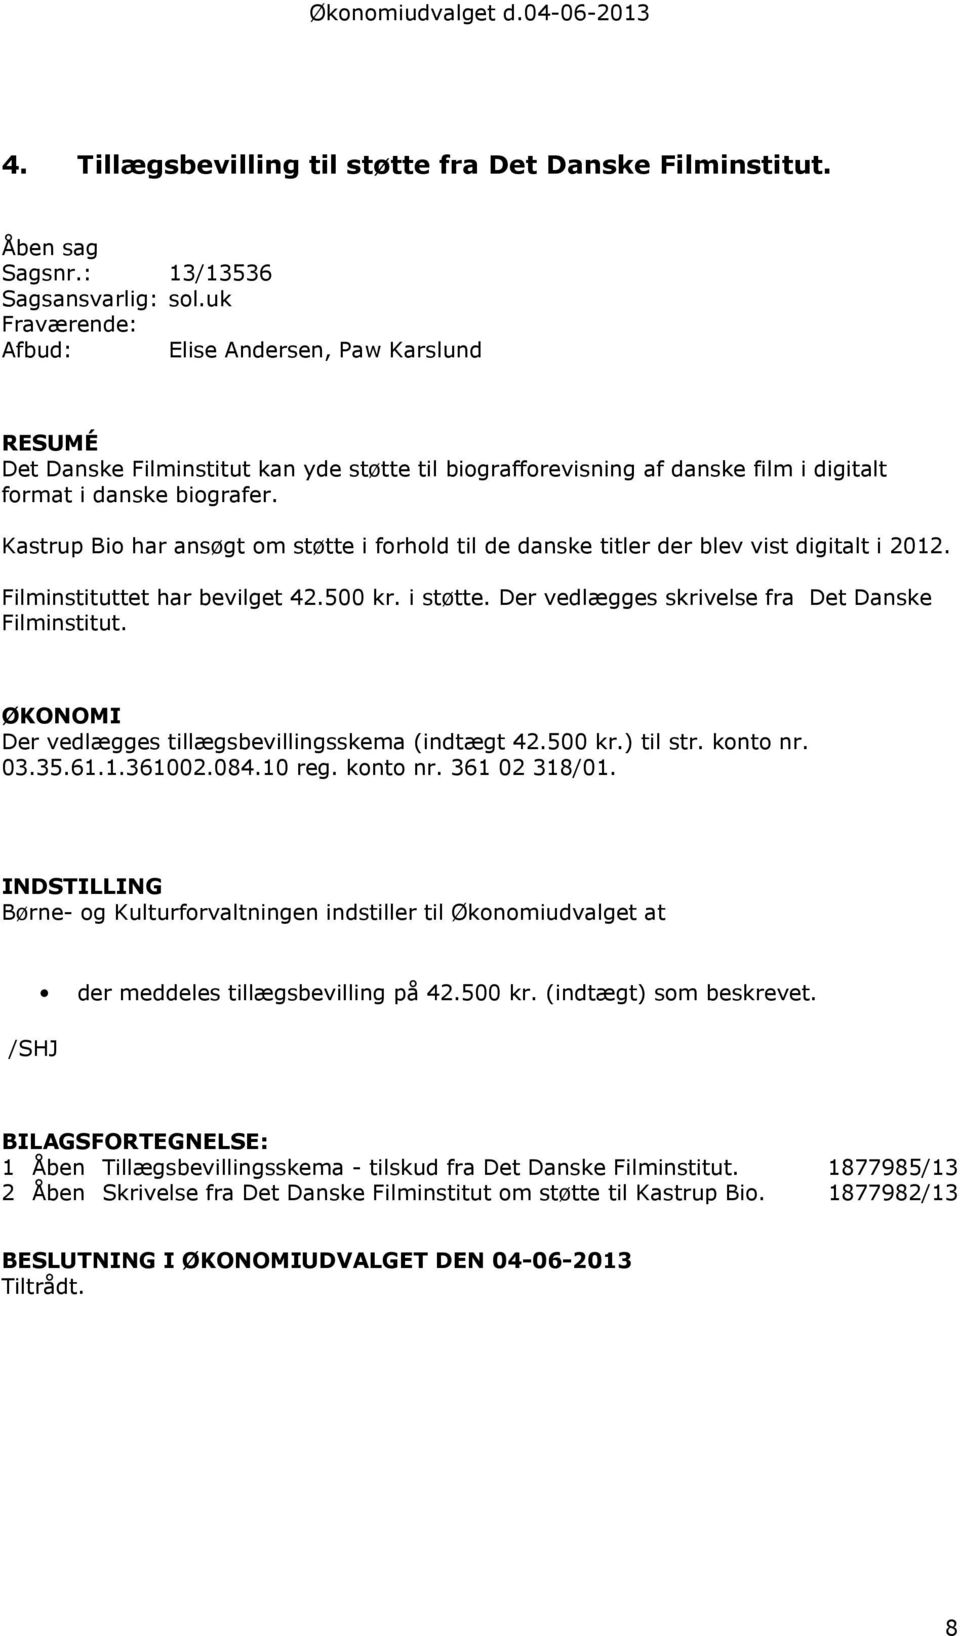 Kastrup Bio har ansøgt om støtte i forhold til de danske titler der blev vist digitalt i 2012. Filminstituttet har bevilget 42.500 kr. i støtte. Der vedlægges skrivelse fra Det Danske Filminstitut.